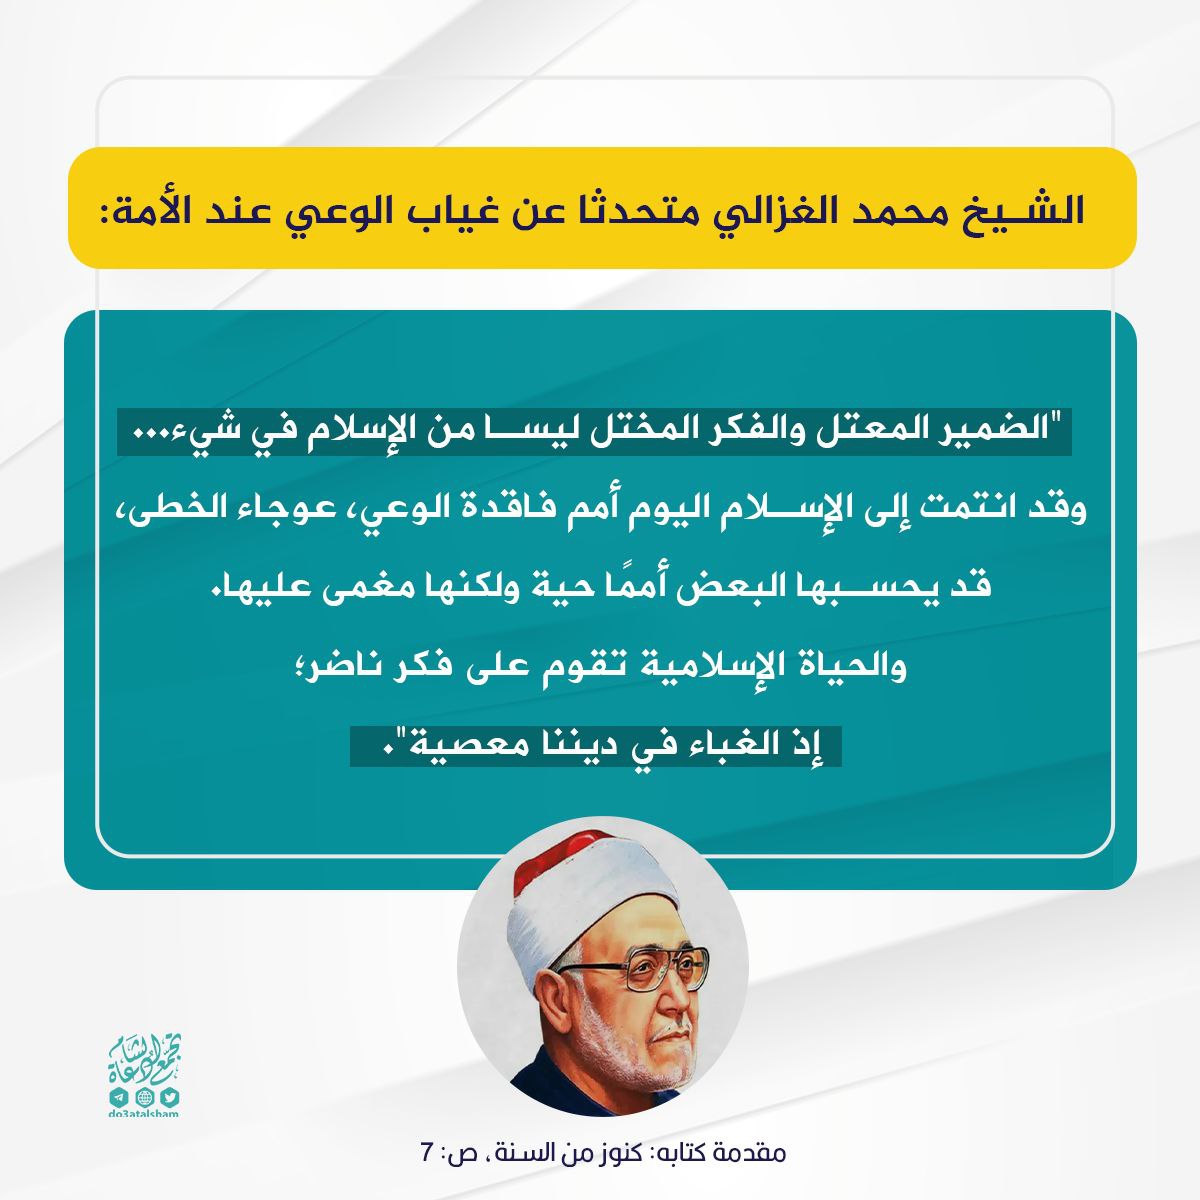 الشيخ محمد الغزالي (رحمه الله)
متحدثا عن غياب الوعي عند الأمة